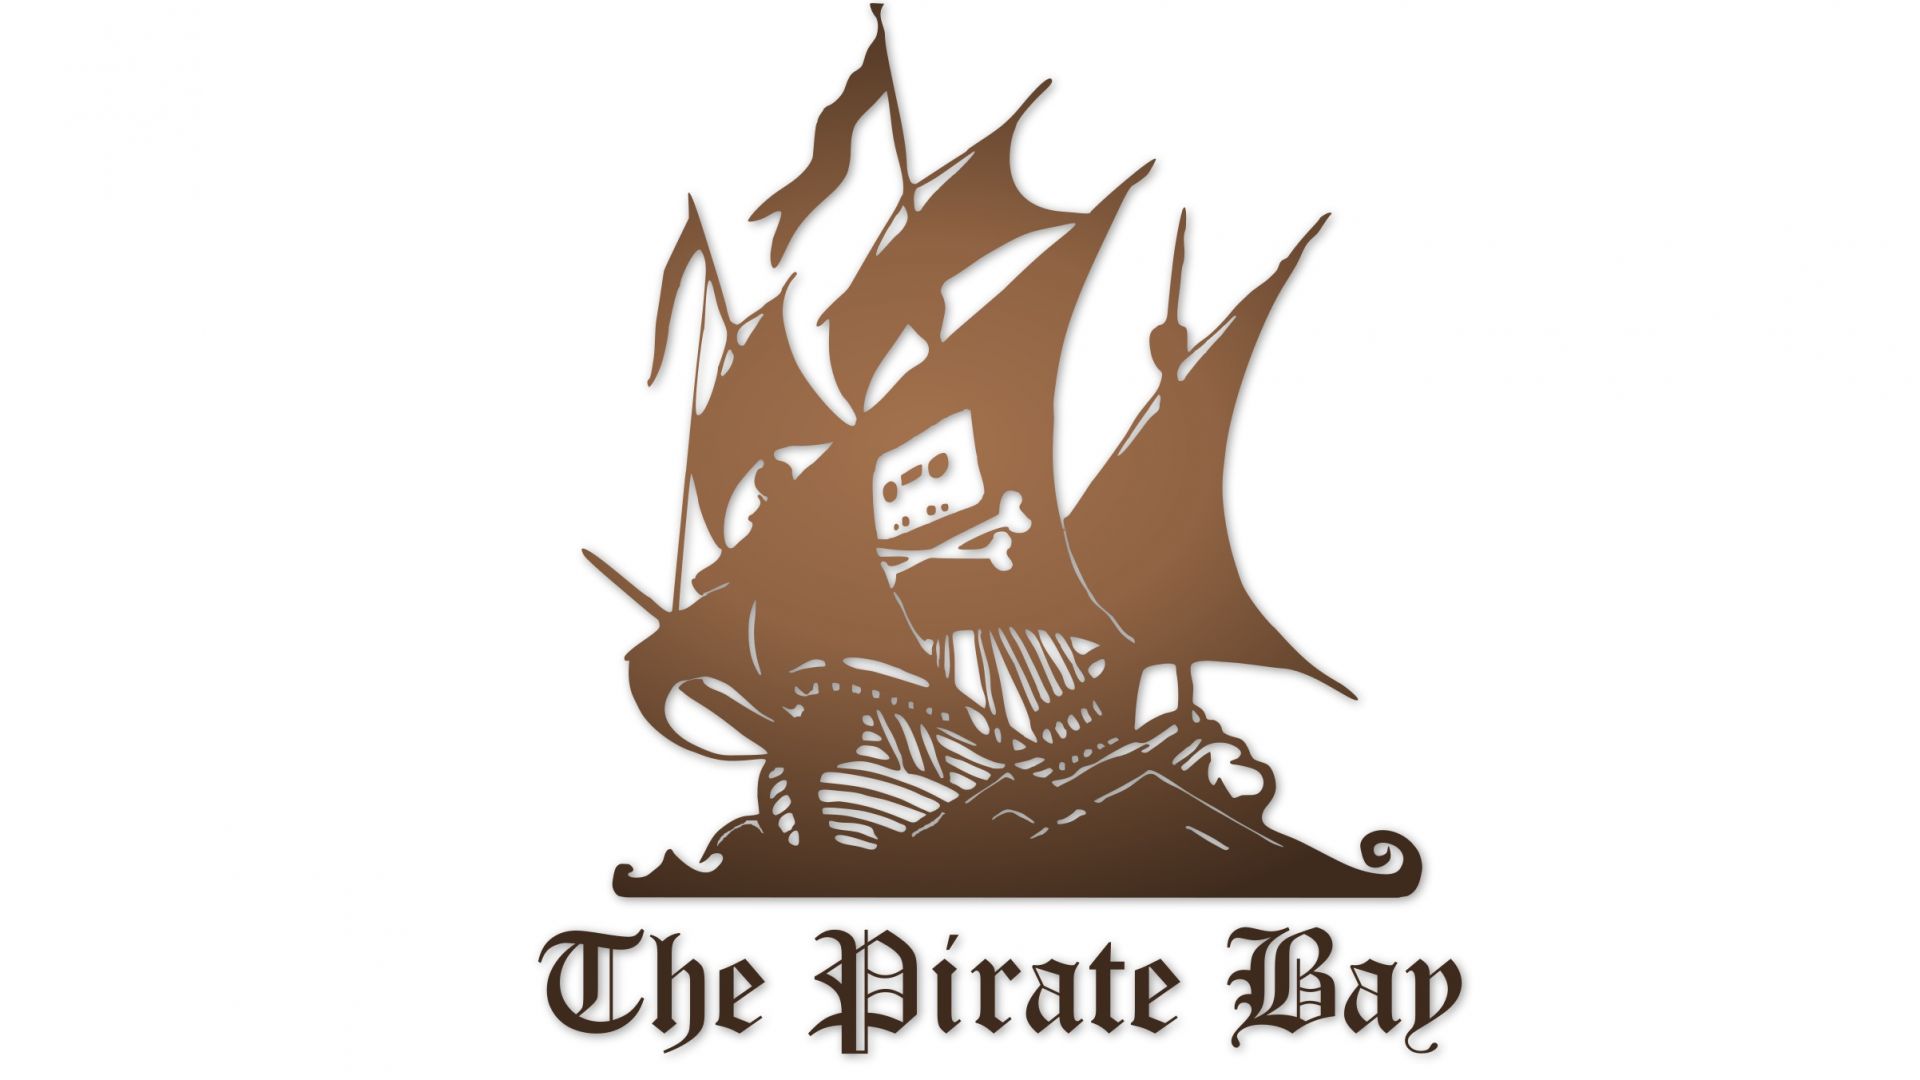 Опитват се да открият операторите на The Pirate Bay